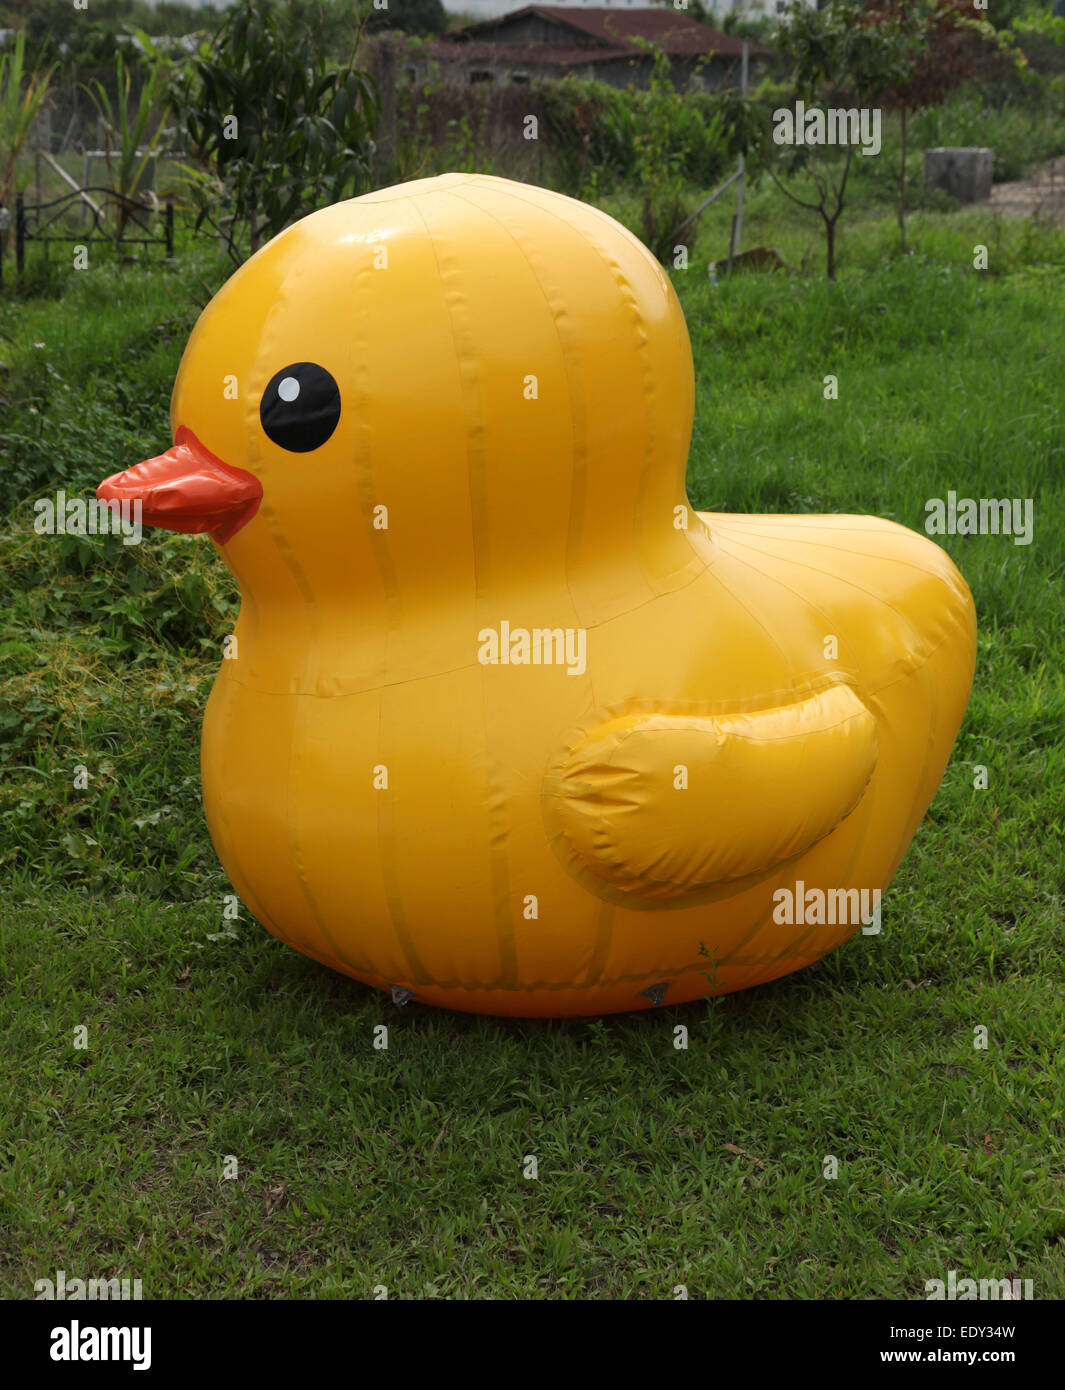 C'est une photo d'un canard jaune géant gonflable qui est un l'herbe d'un parc ou jardin piscine Banque D'Images